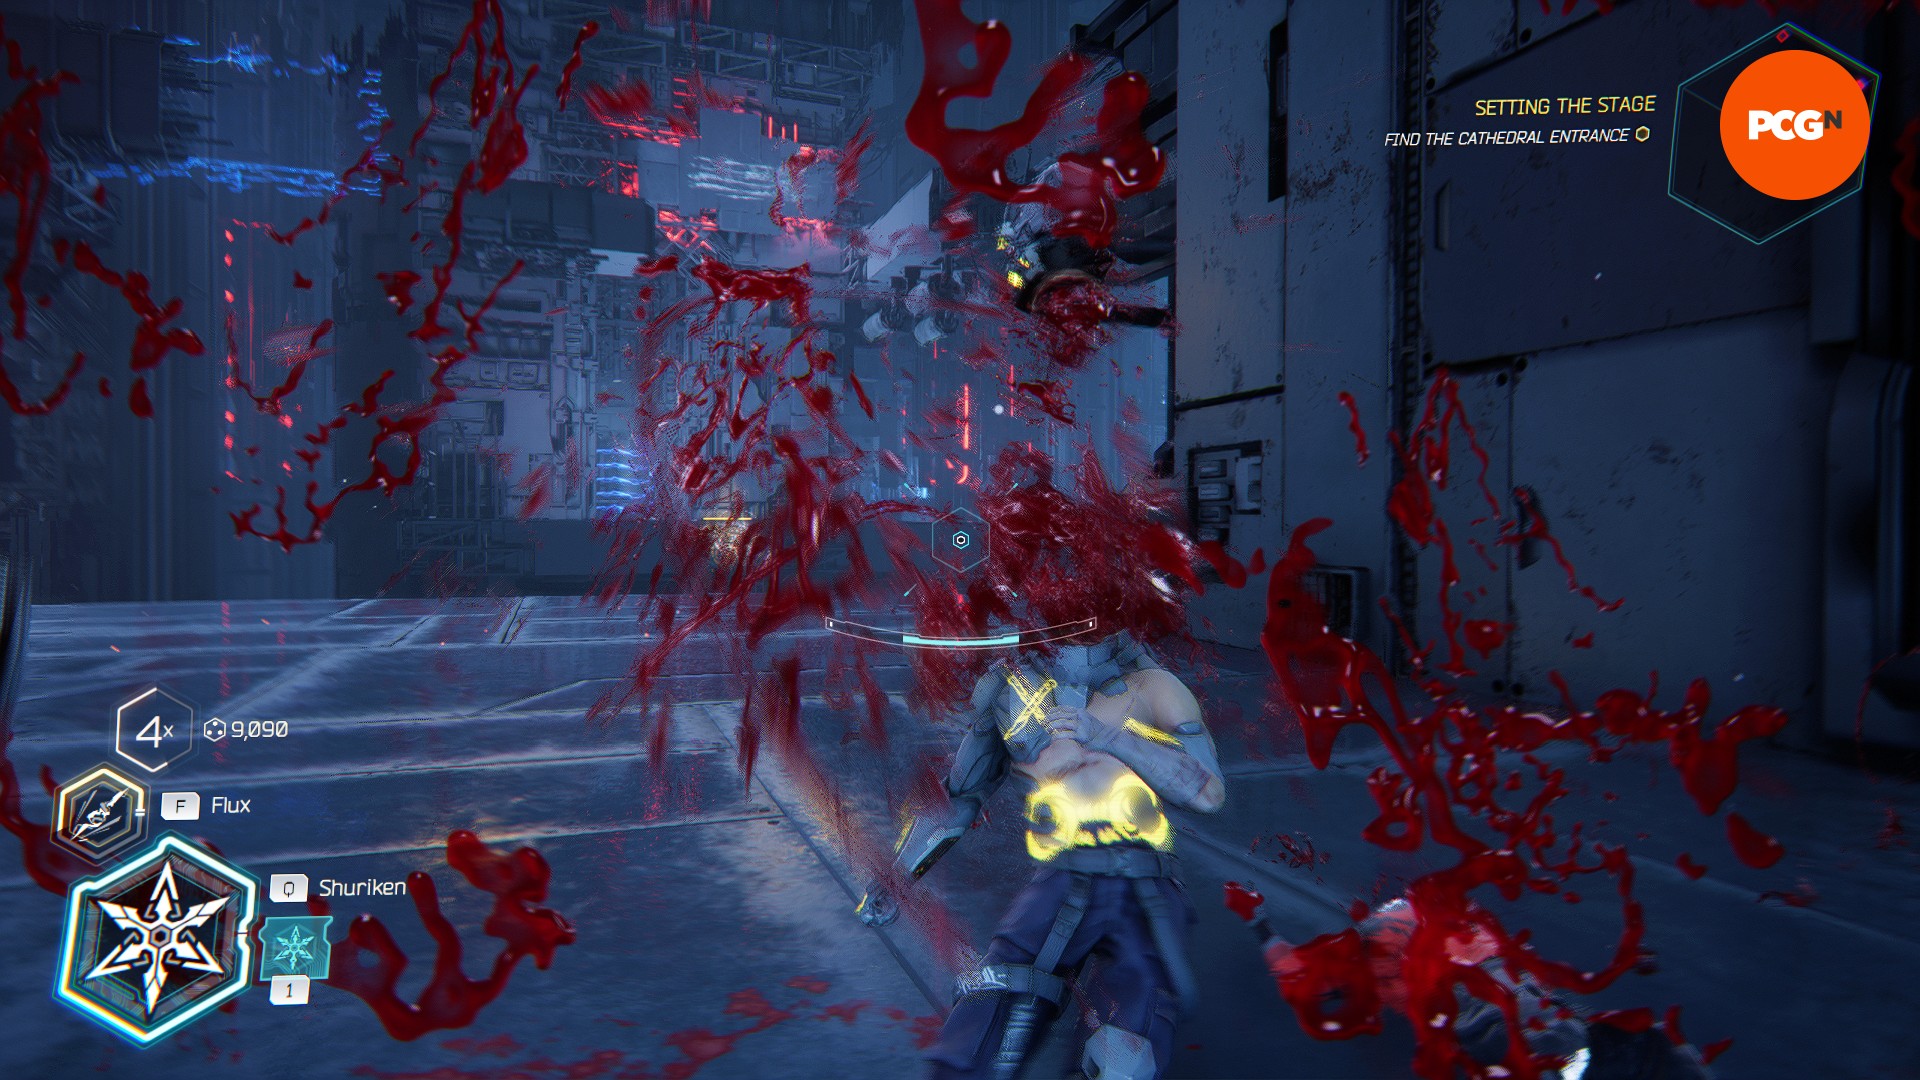 Revue de Ghostrunner 2 : Les restes d'un cadavre vêtu d'une veste jaune éclaboussent l'écran, avec du sang sur la caméra.